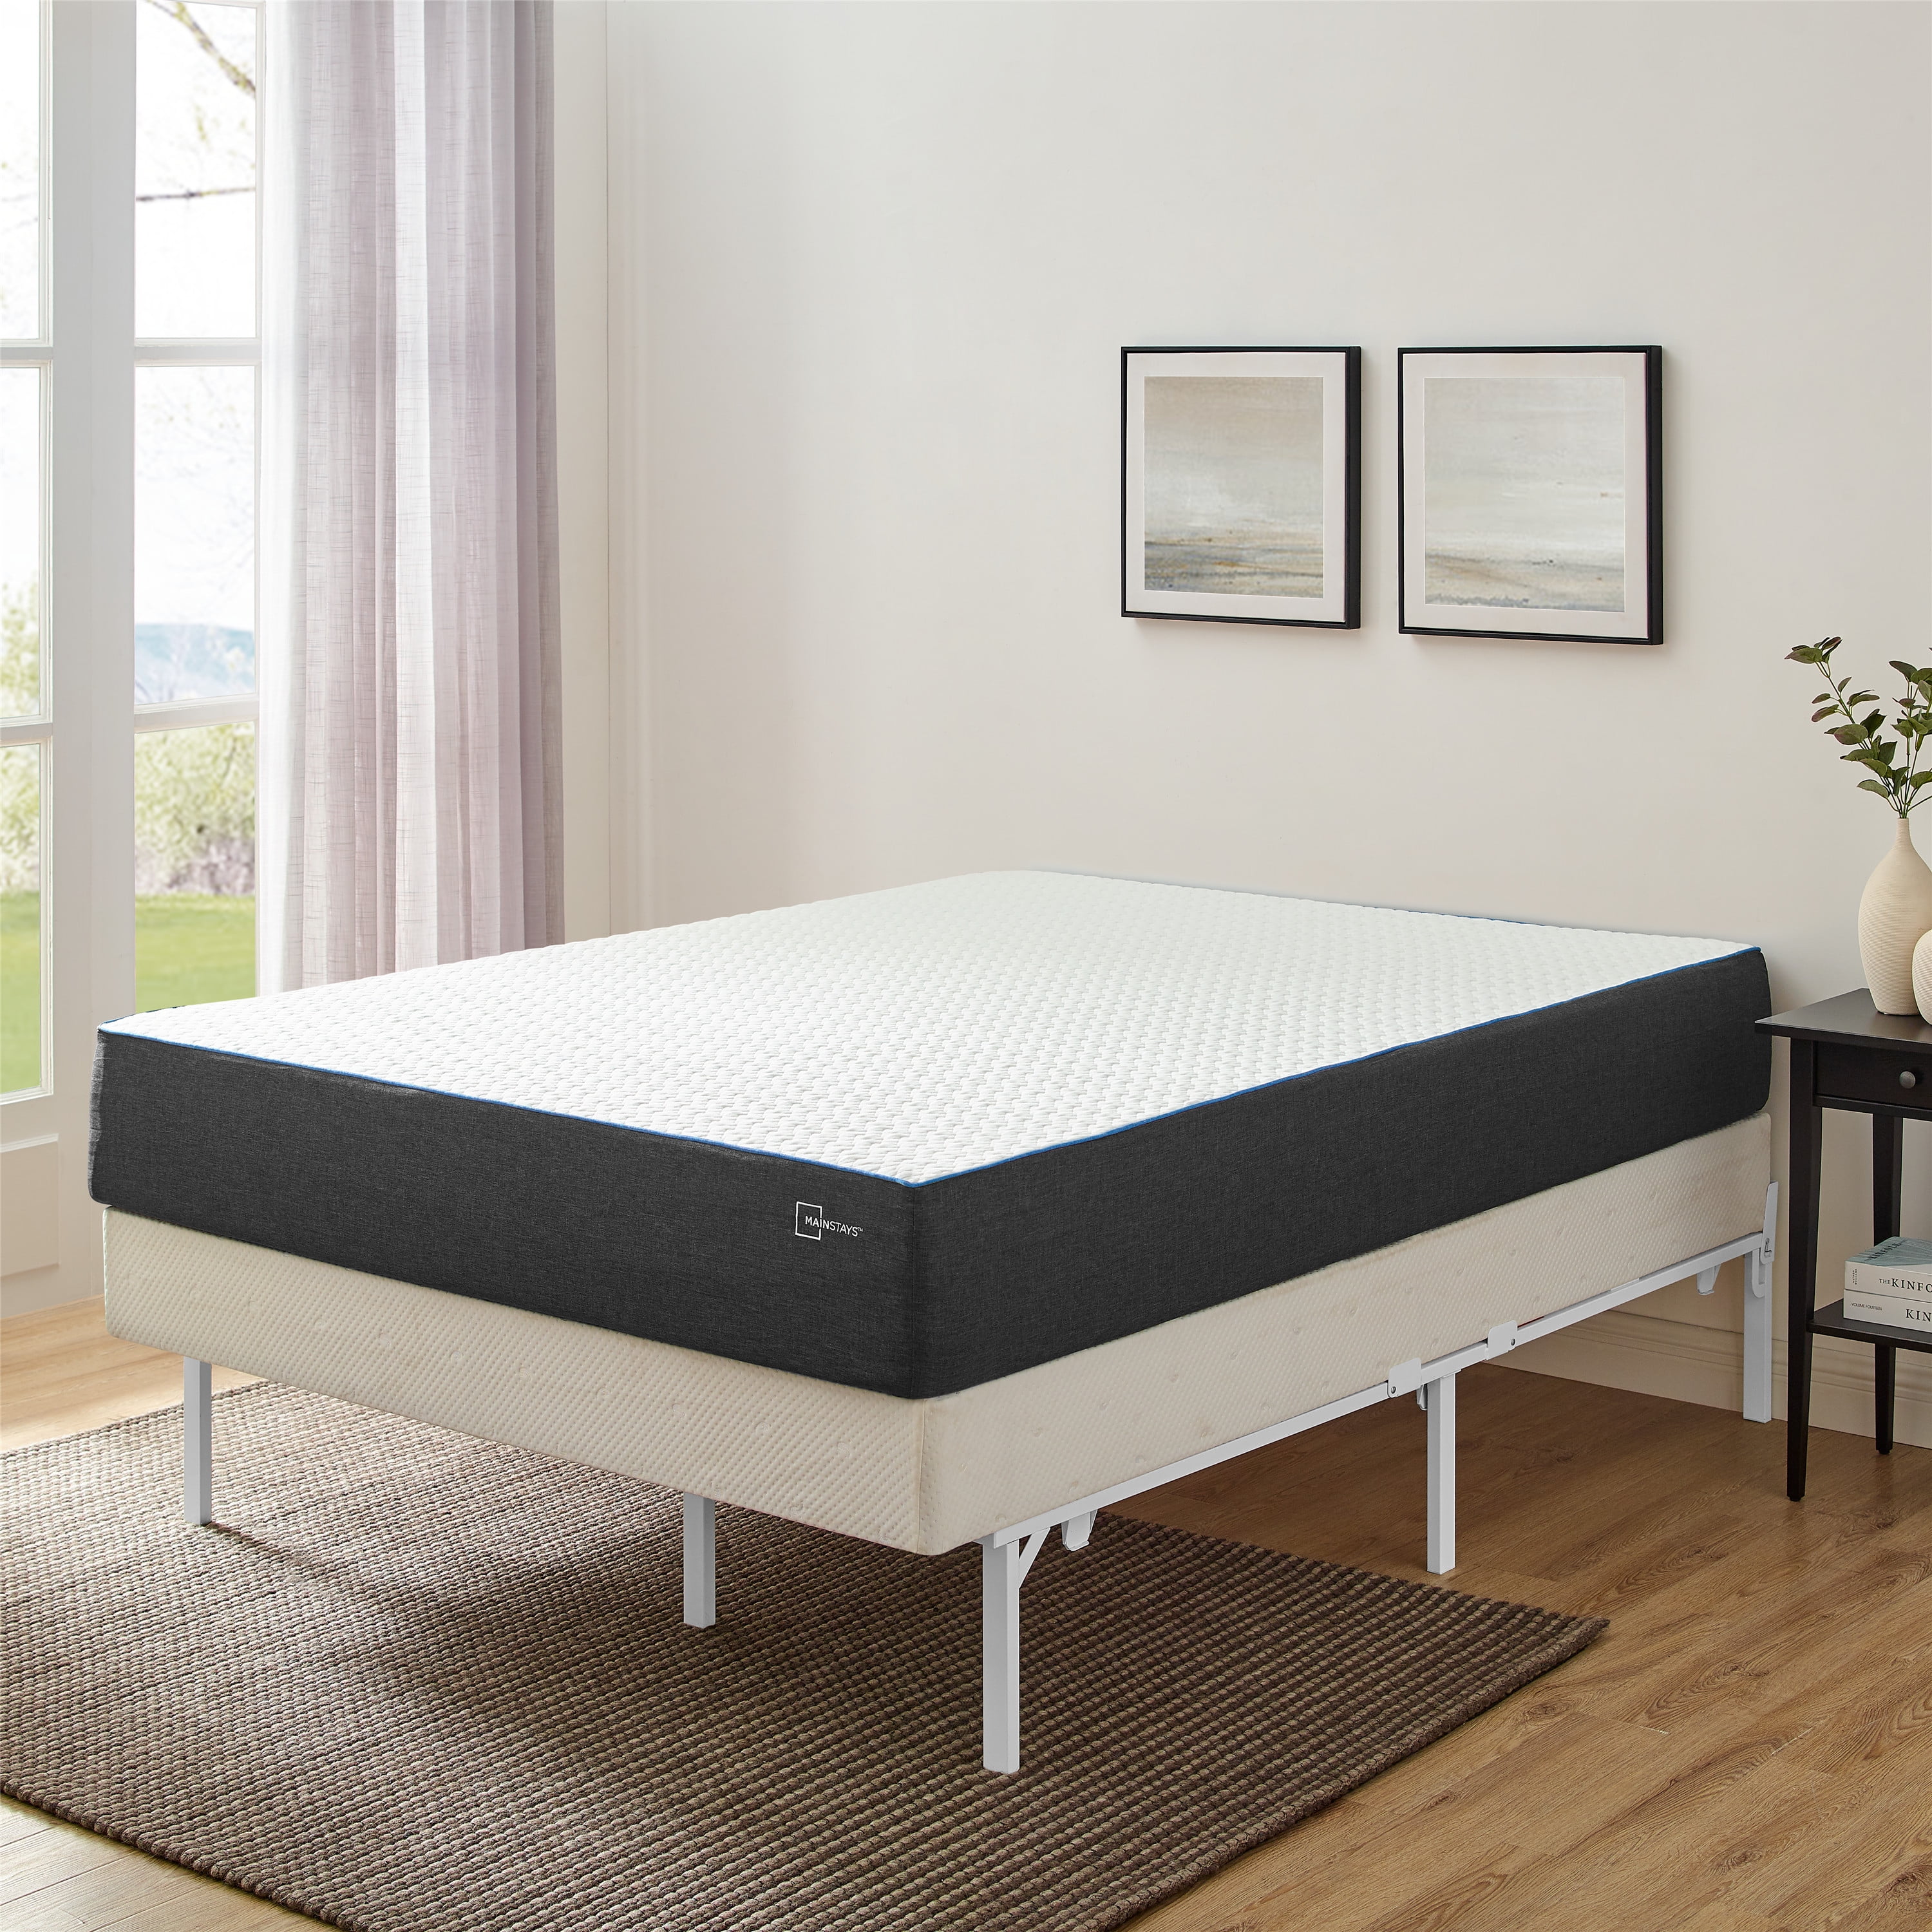 HOLLYWOOD BED FRAME Bed Frame King Size Adjustable Foldable Metal Brown 